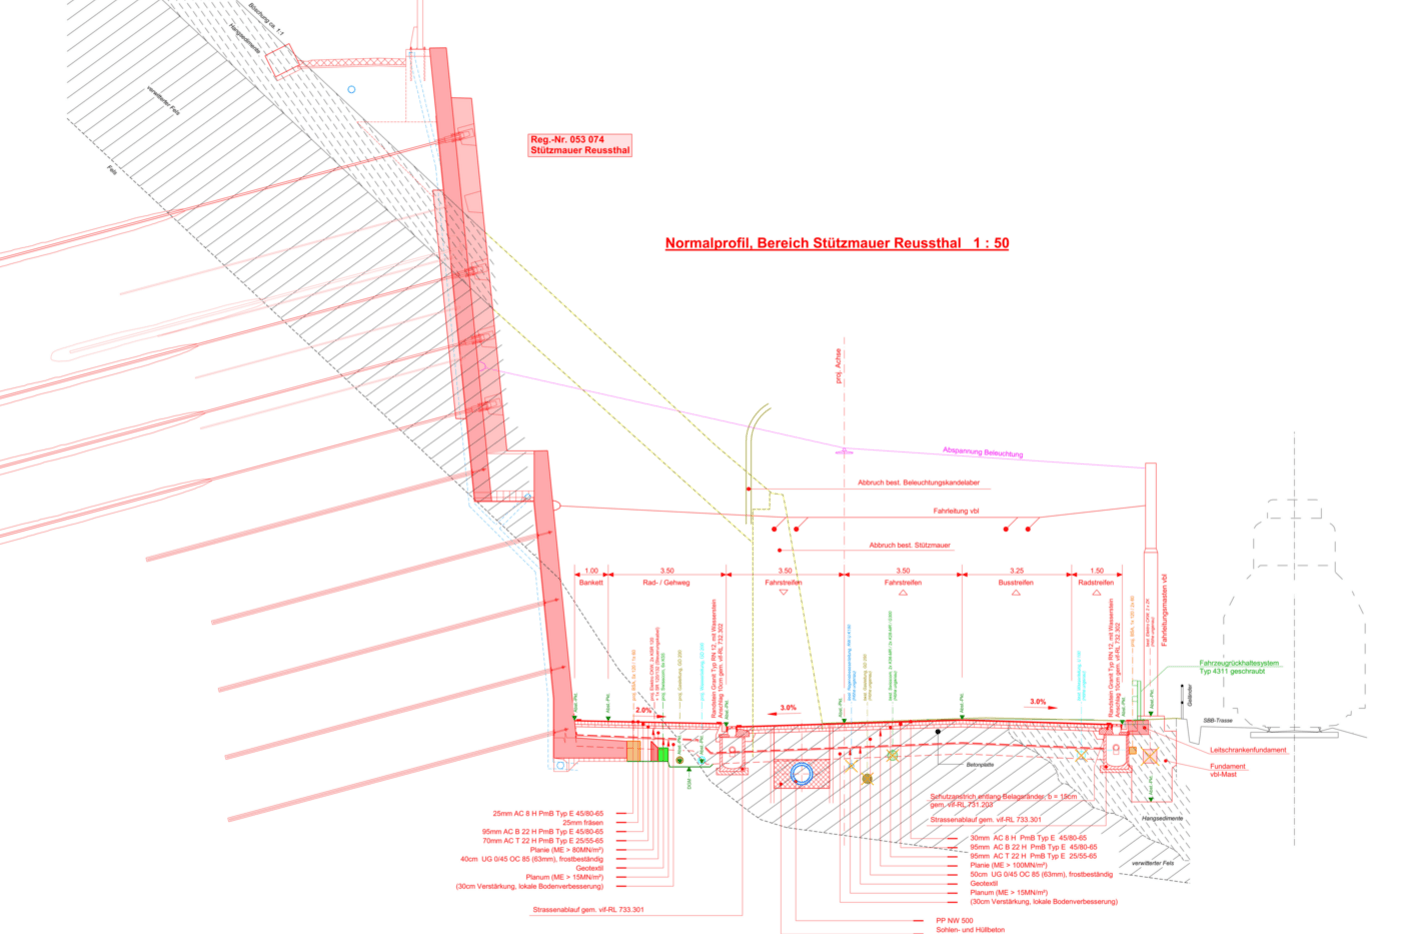 Normalprofil der neuen zweistufigen und verankerten Stützkonstruktion (rot) und der bestehenden Reussthalmauer (gelb gestrichelt).